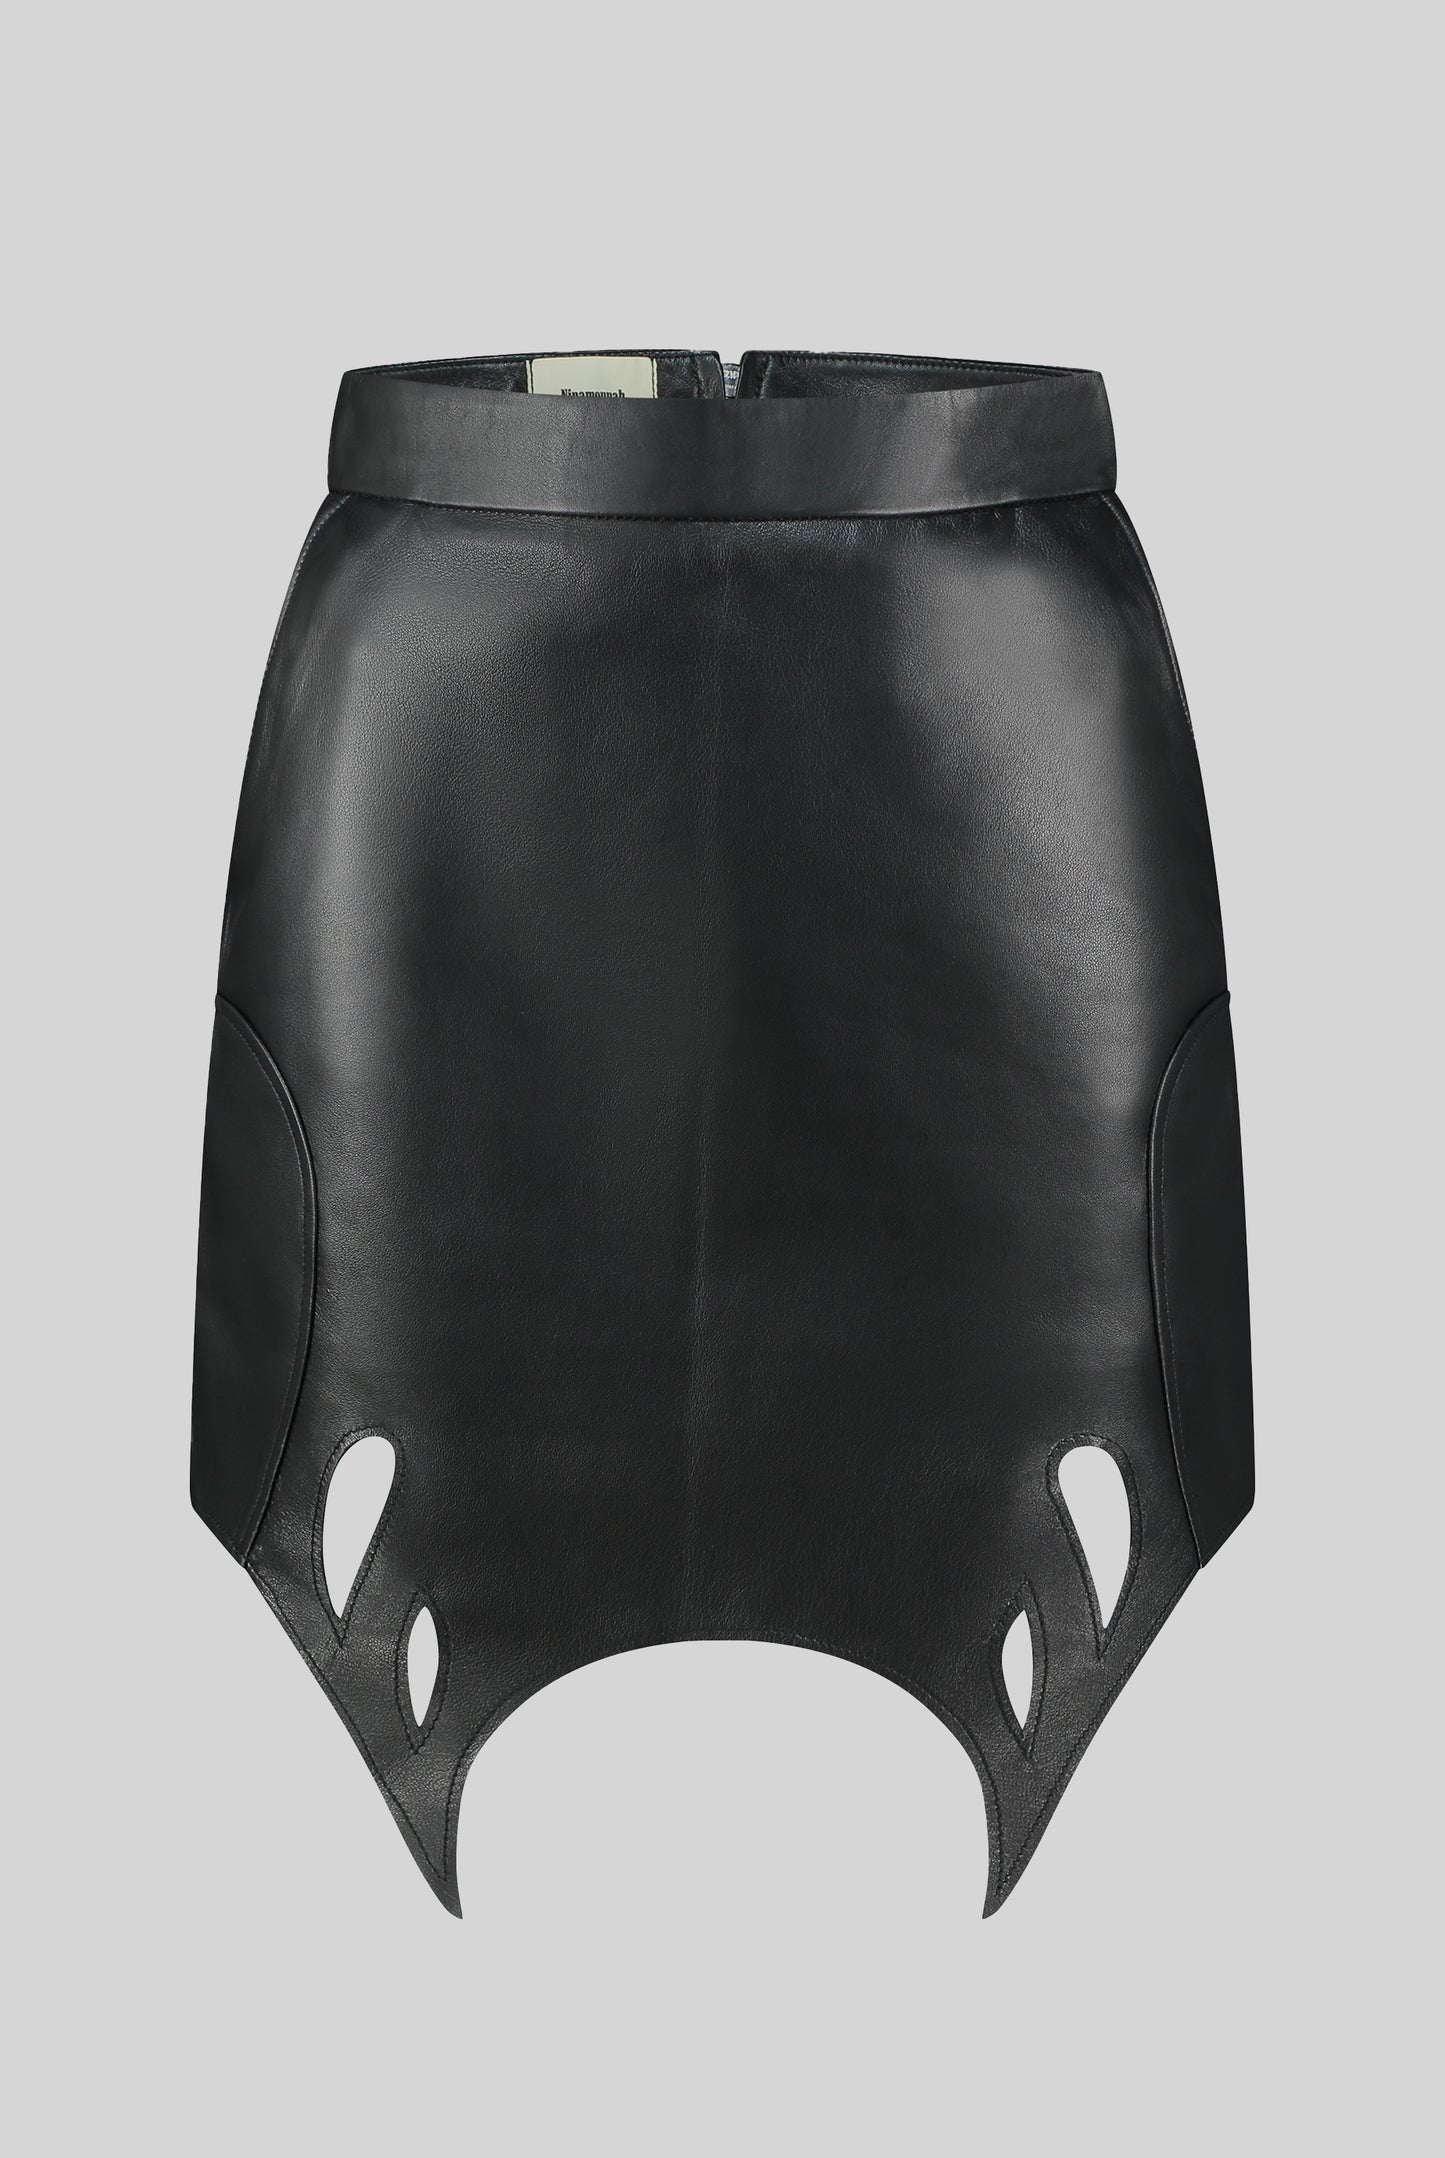 Silene Skirt in Black Leather